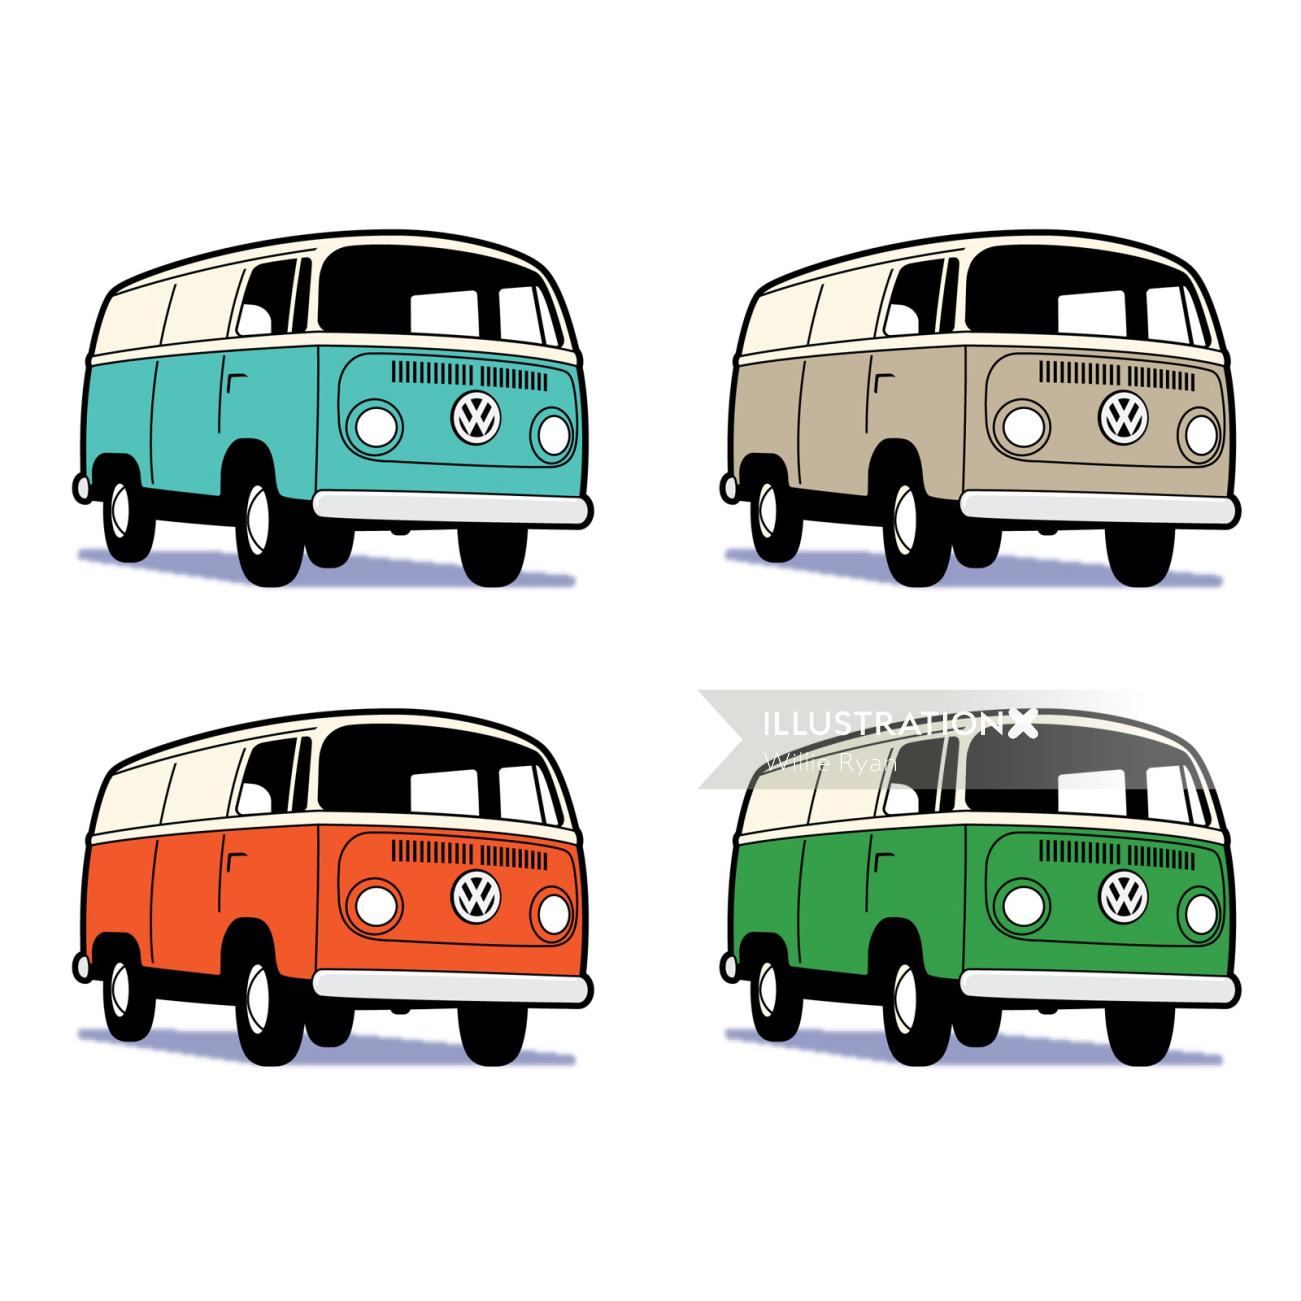 Iconic Designs For Volkswagen Camper Van